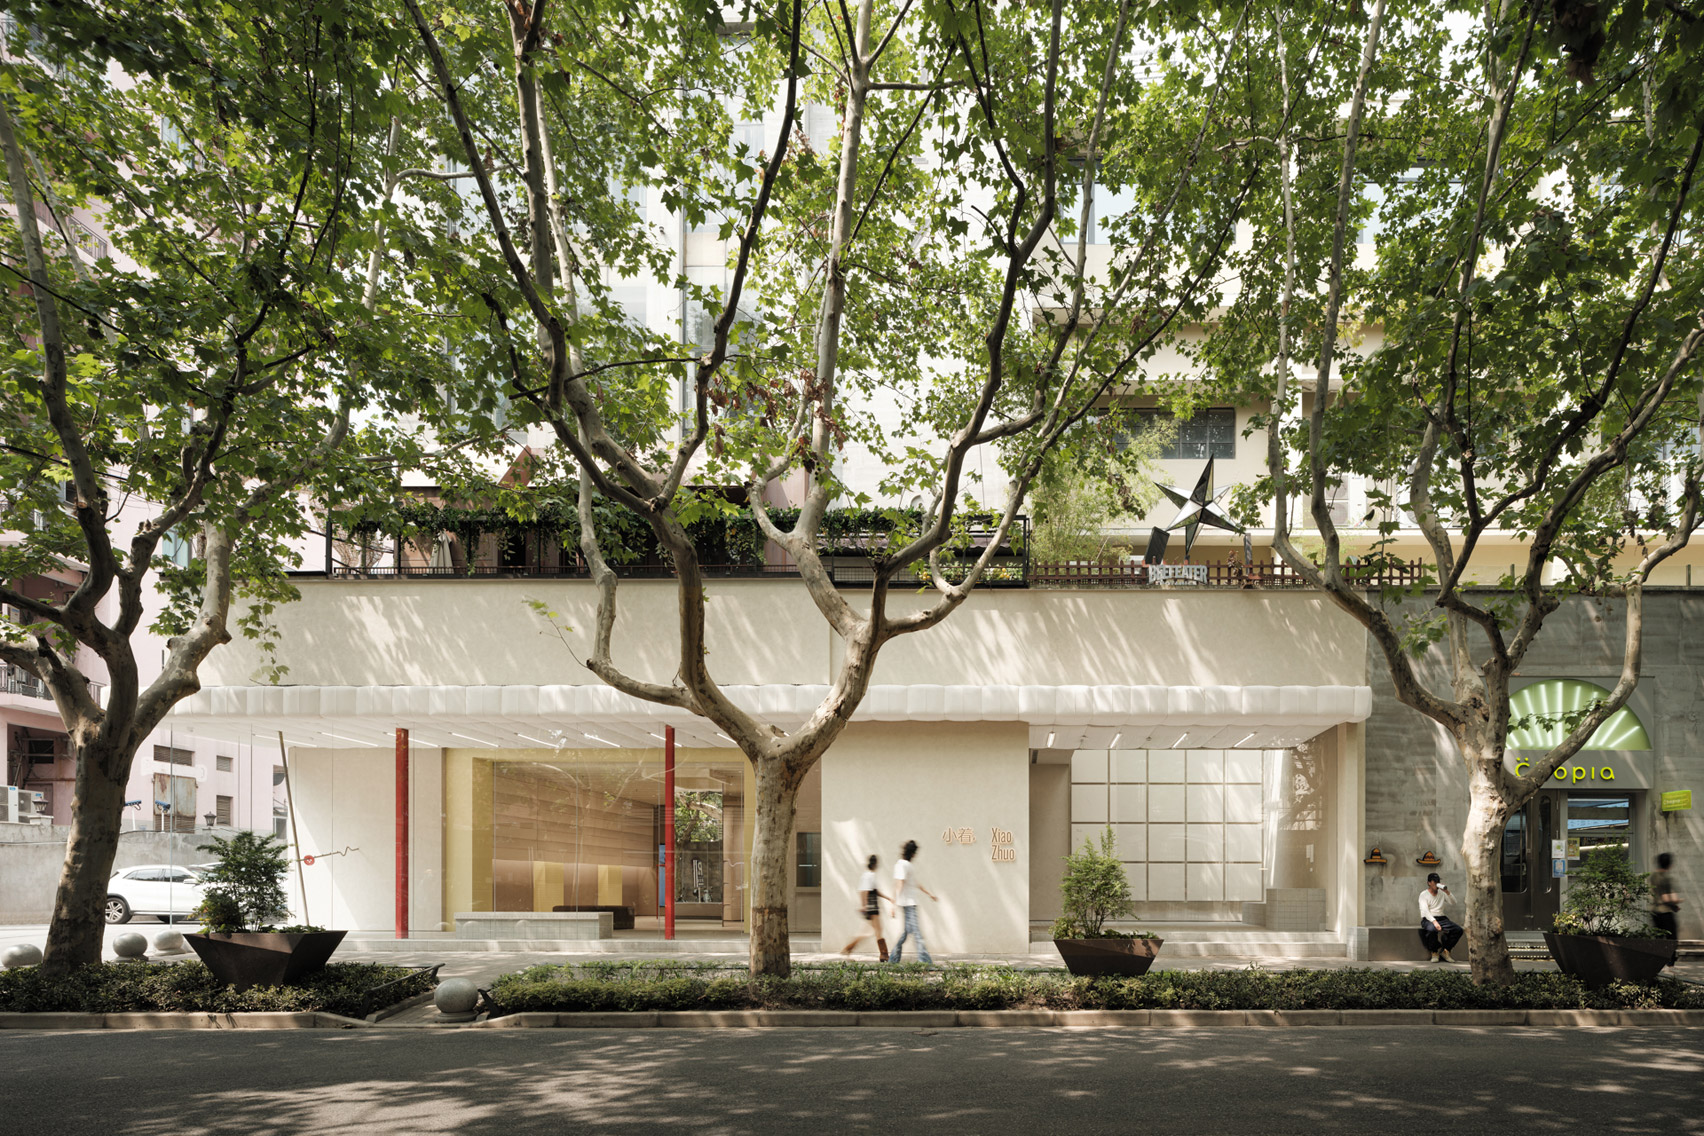 FOG建筑为上海小卓精品店增添了有趣的剪裁图案|ART-Arrakis | 建筑室内设计的创新与灵感